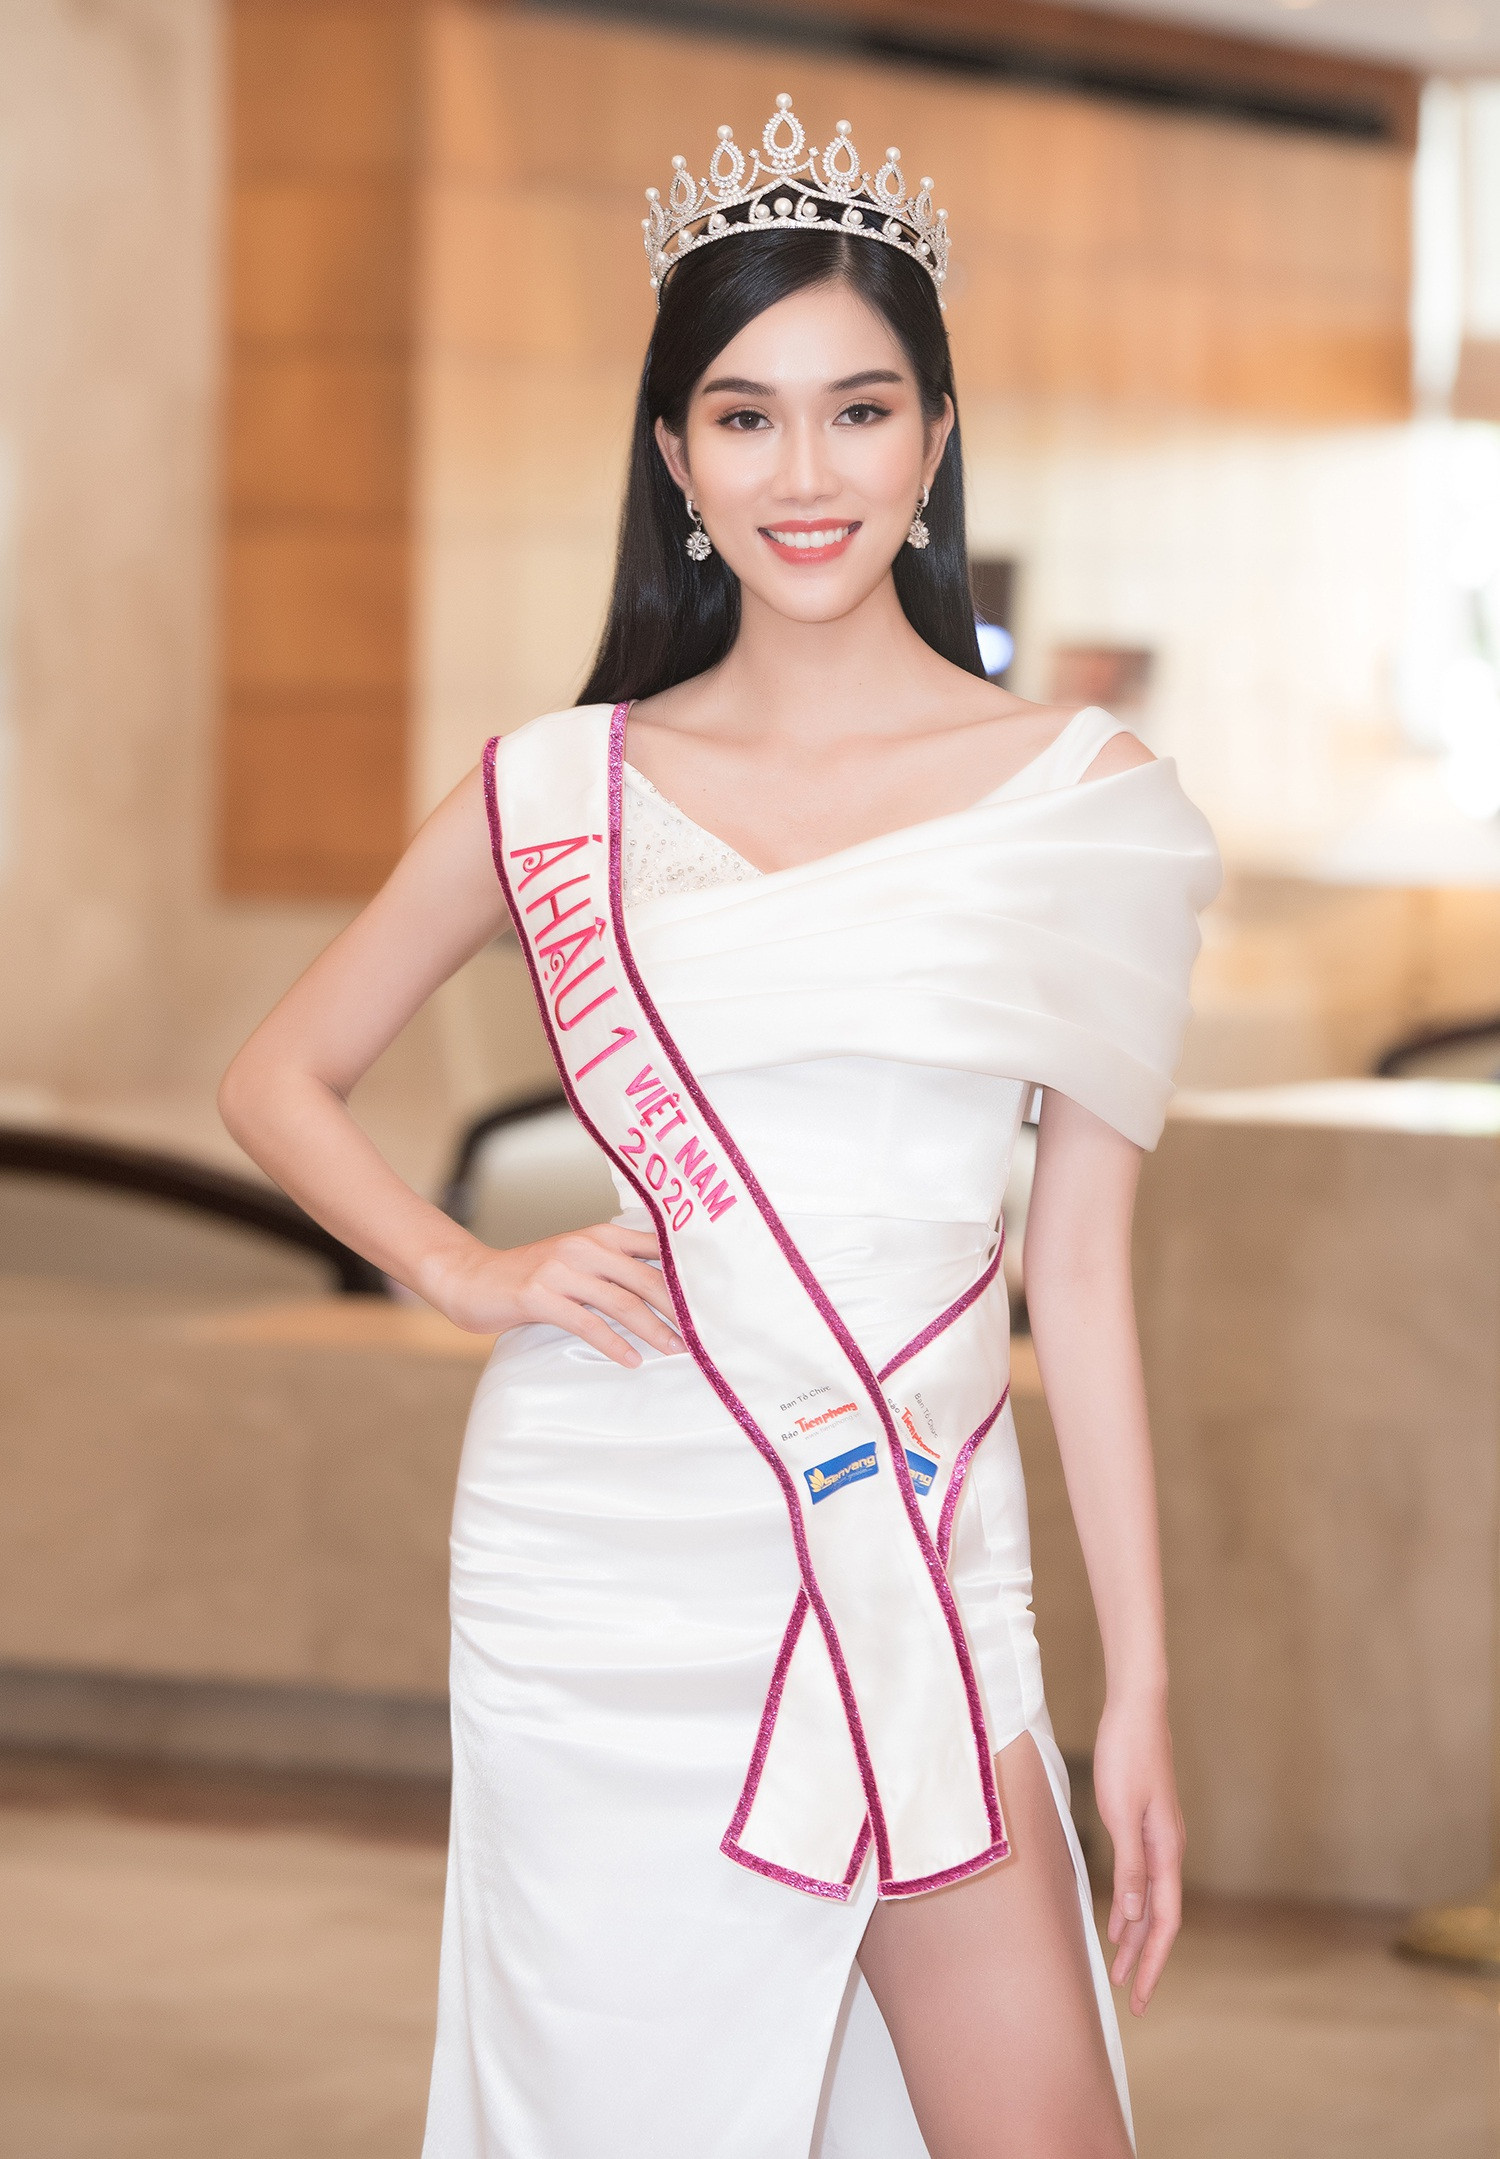 Trong tất cả các người đẹp của Hoa hậu Việt Nam, Phương Anh là người sở hữu thành tích học tập đáng nể nhất. Cô từng đoạt giải 3 Học sinh giỏi quốc gia môn tiếng Pháp năm 2016; học bổng toàn phần 4 năm tại Đại học RMIT; bằng ngoại ngữ tiếng Anh (IELTS 8.0) và tiếng Pháp (Delf C1). 